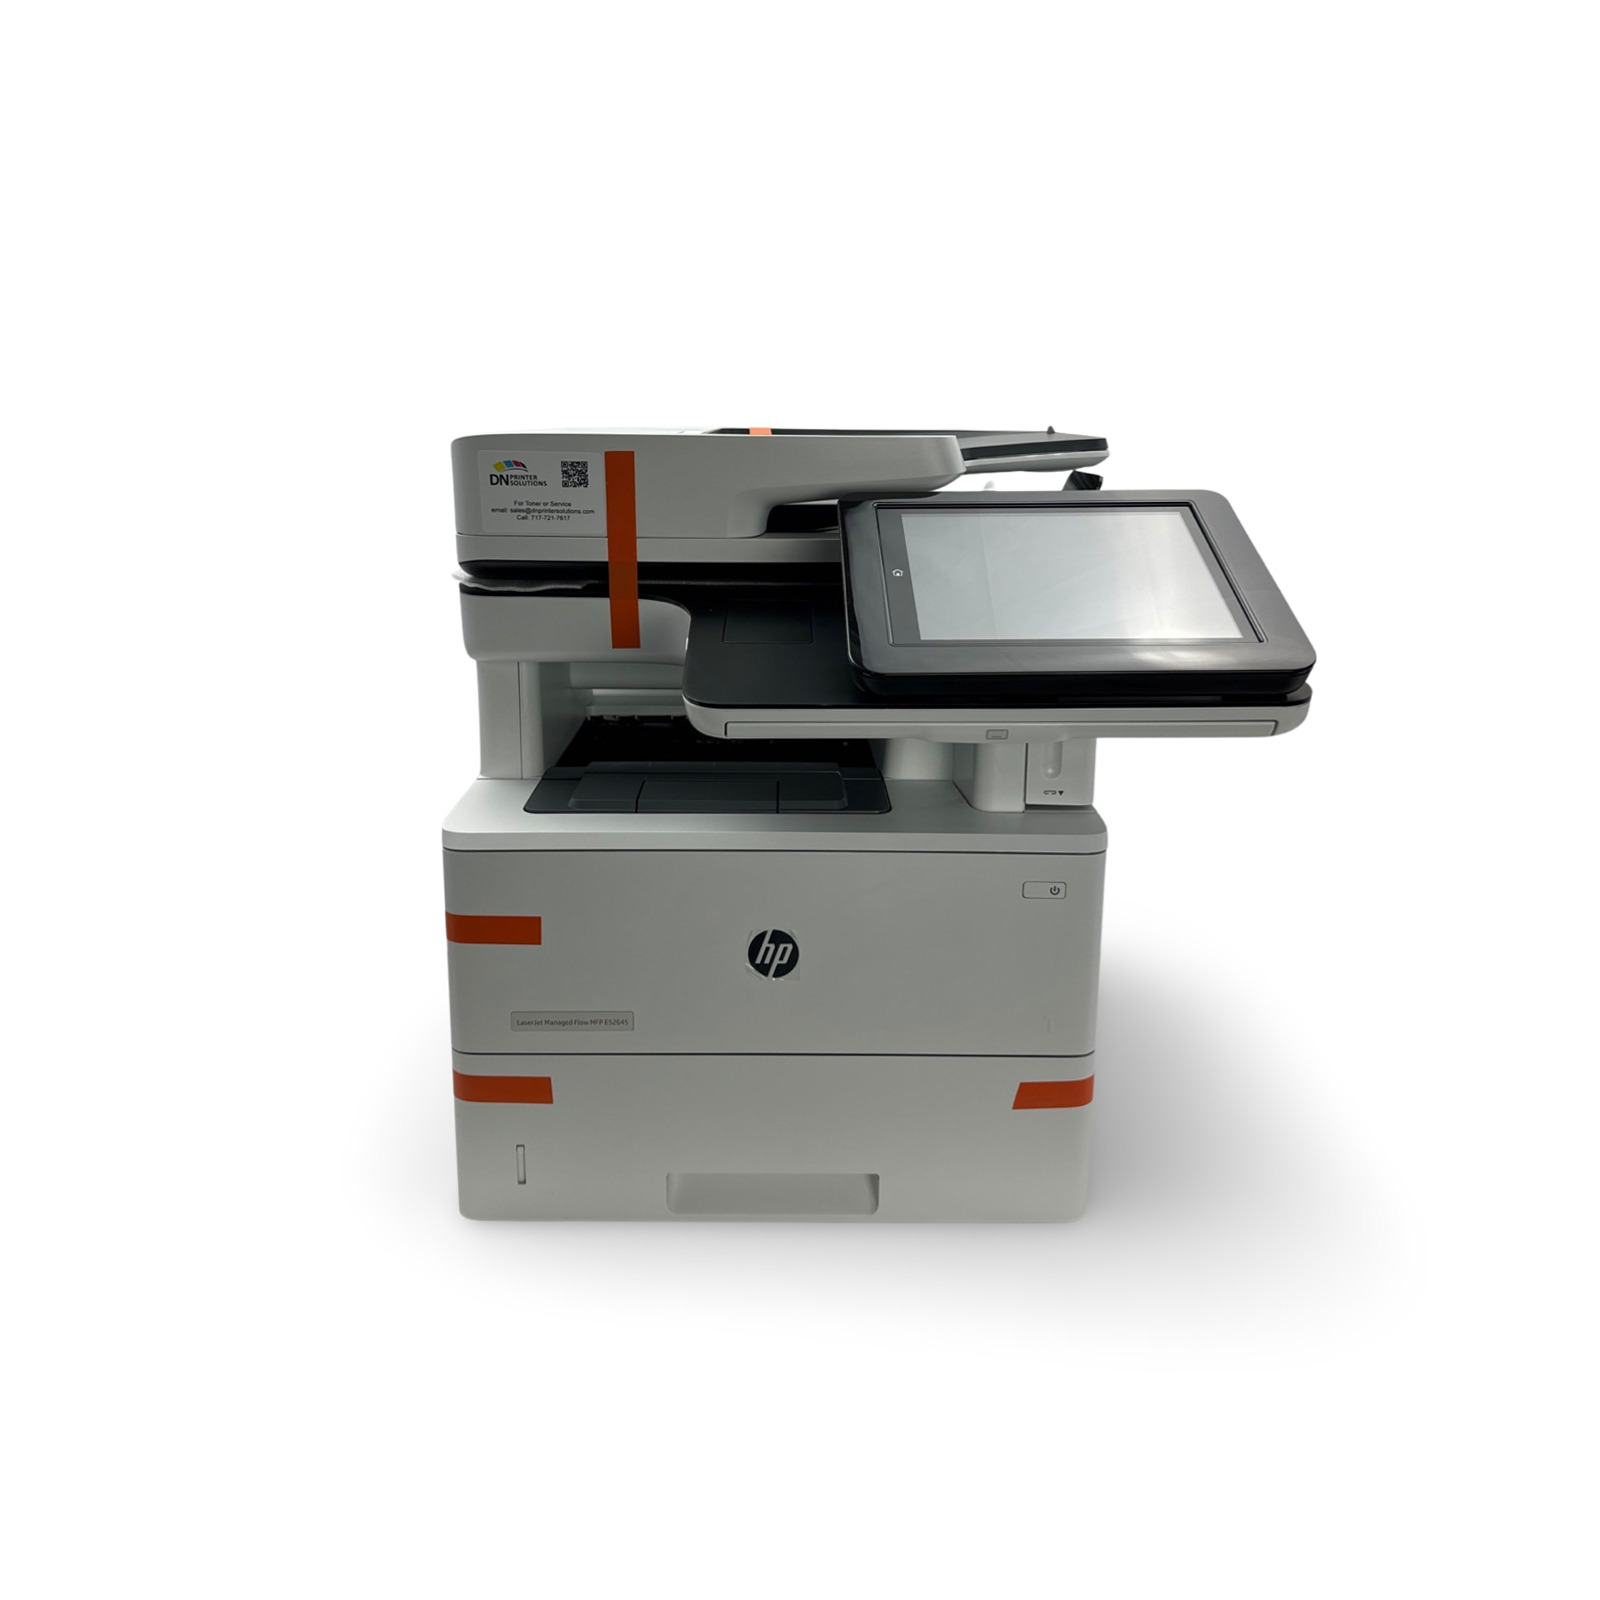 HP LaserJet Managed Flow MFP E52645c Laser Printer 1PS55A w/Toner